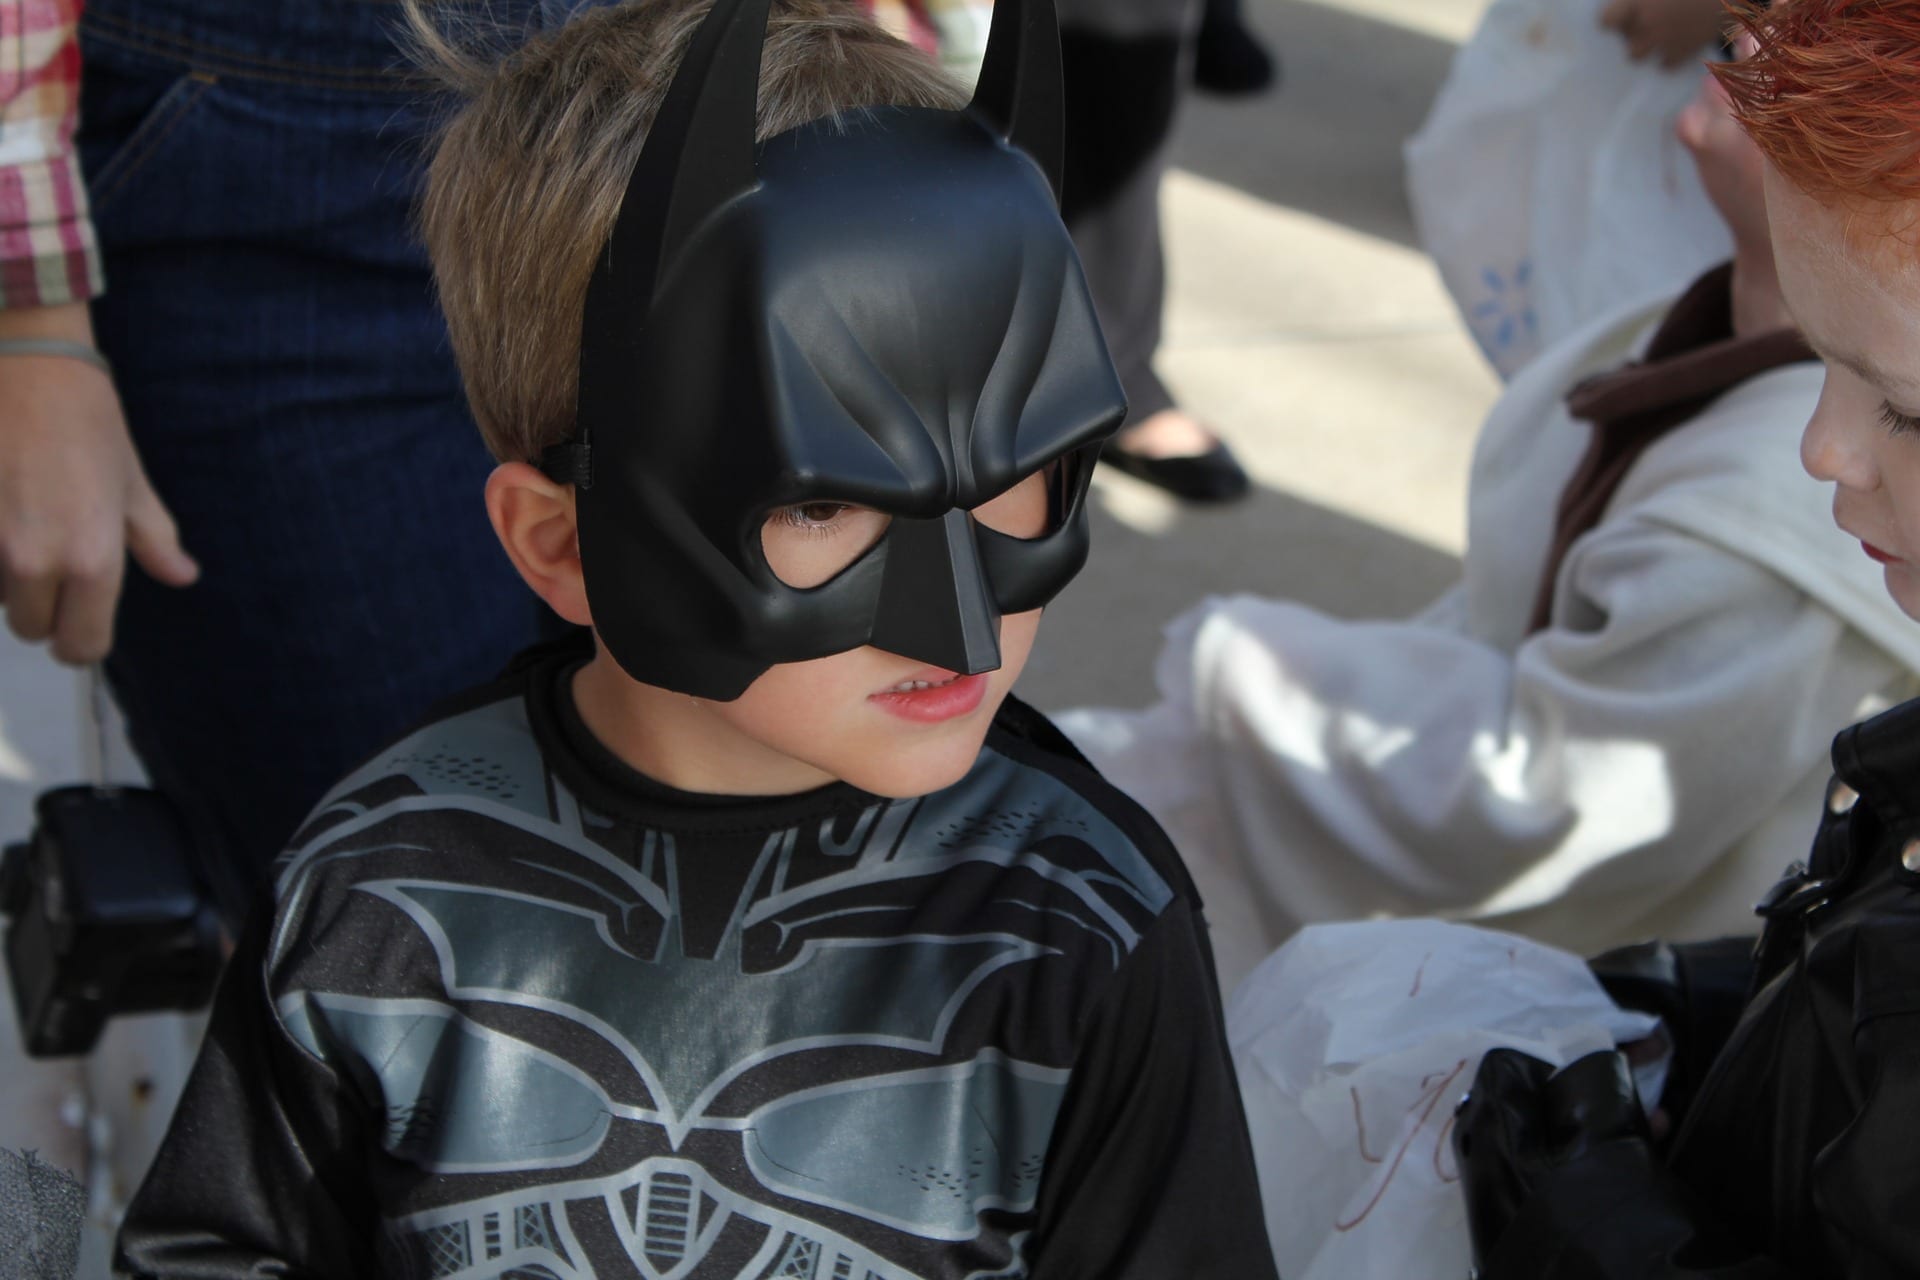 Kid in a Batman Costume